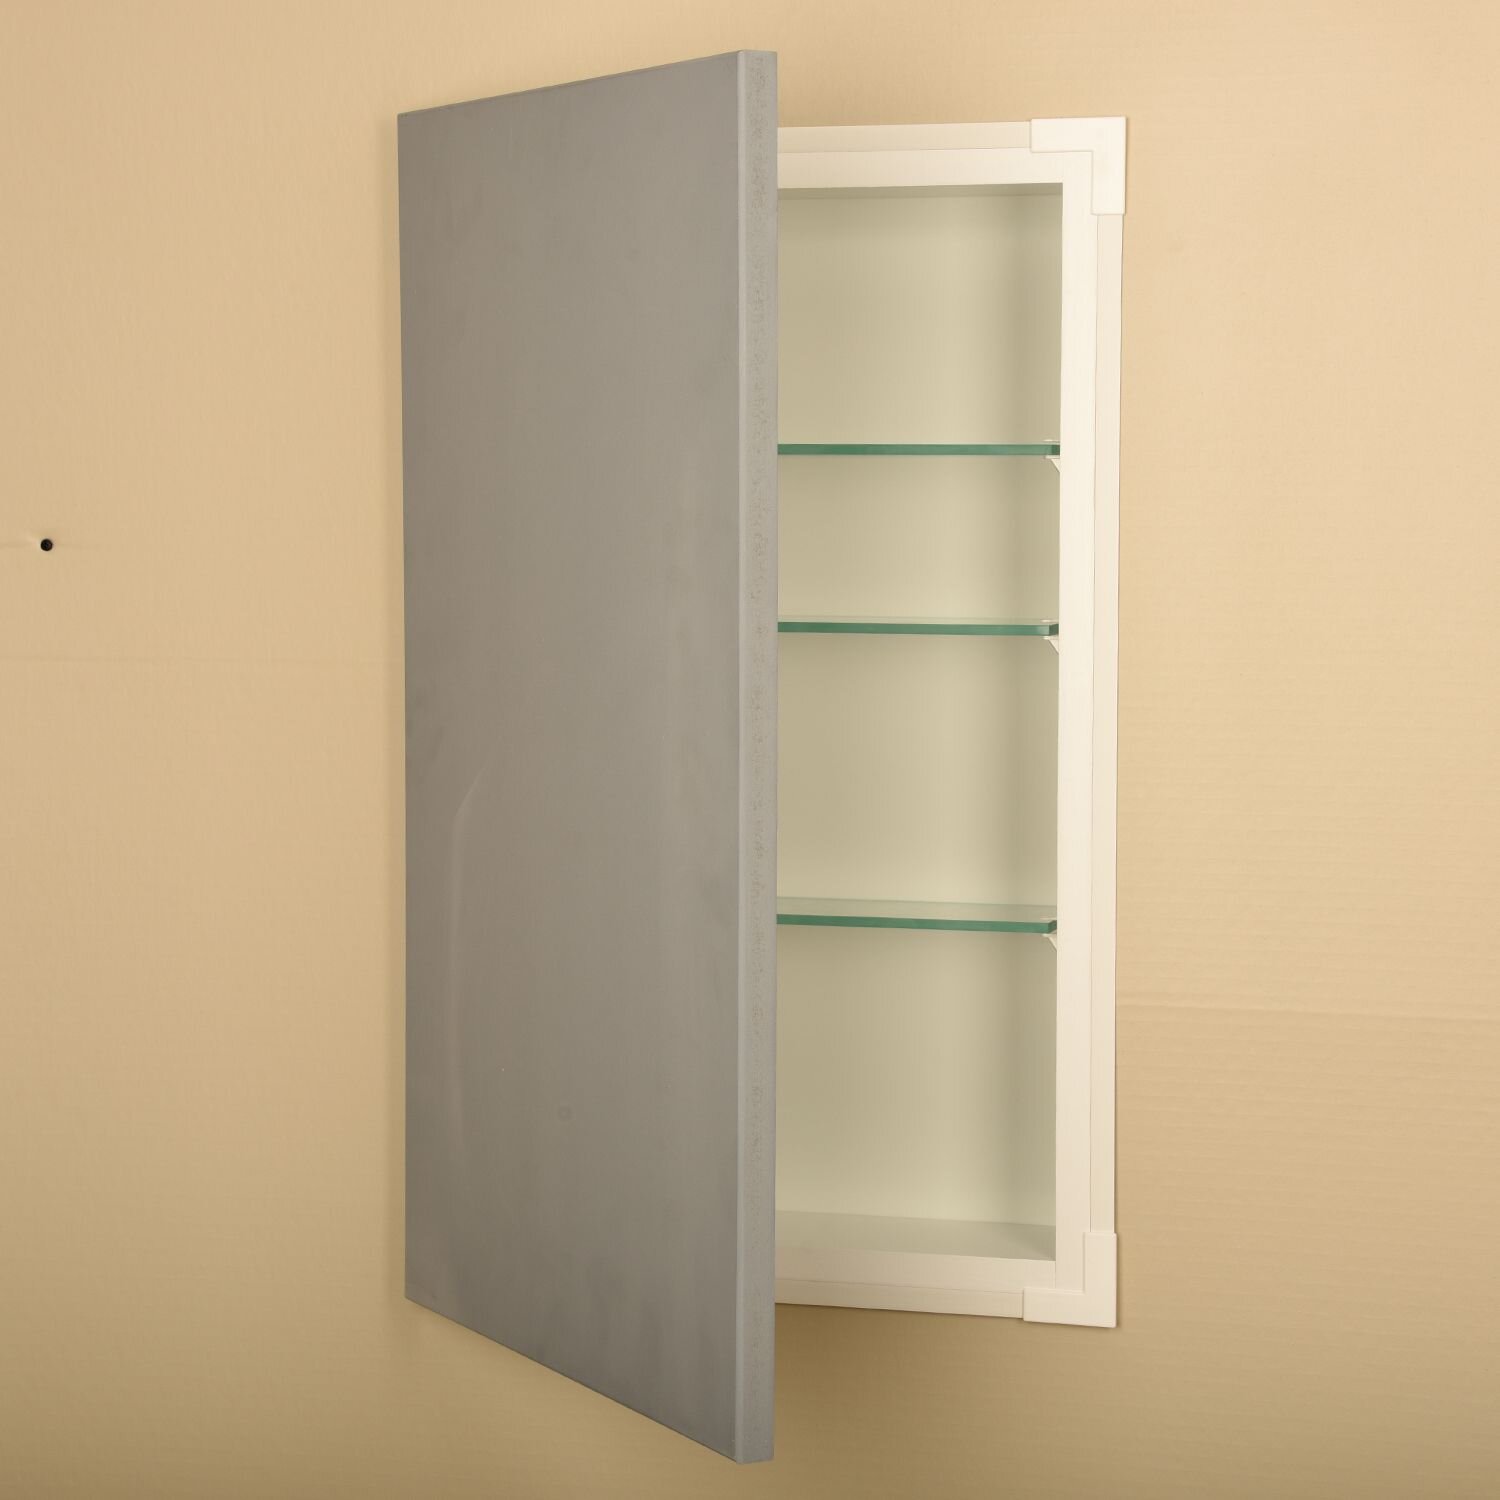 https://assets.wfcdn.com/im/52410295/compr-r85/1265/126518891/greywood-slab-panel-frameless-recessed-wood-medicine-cabinet.jpg